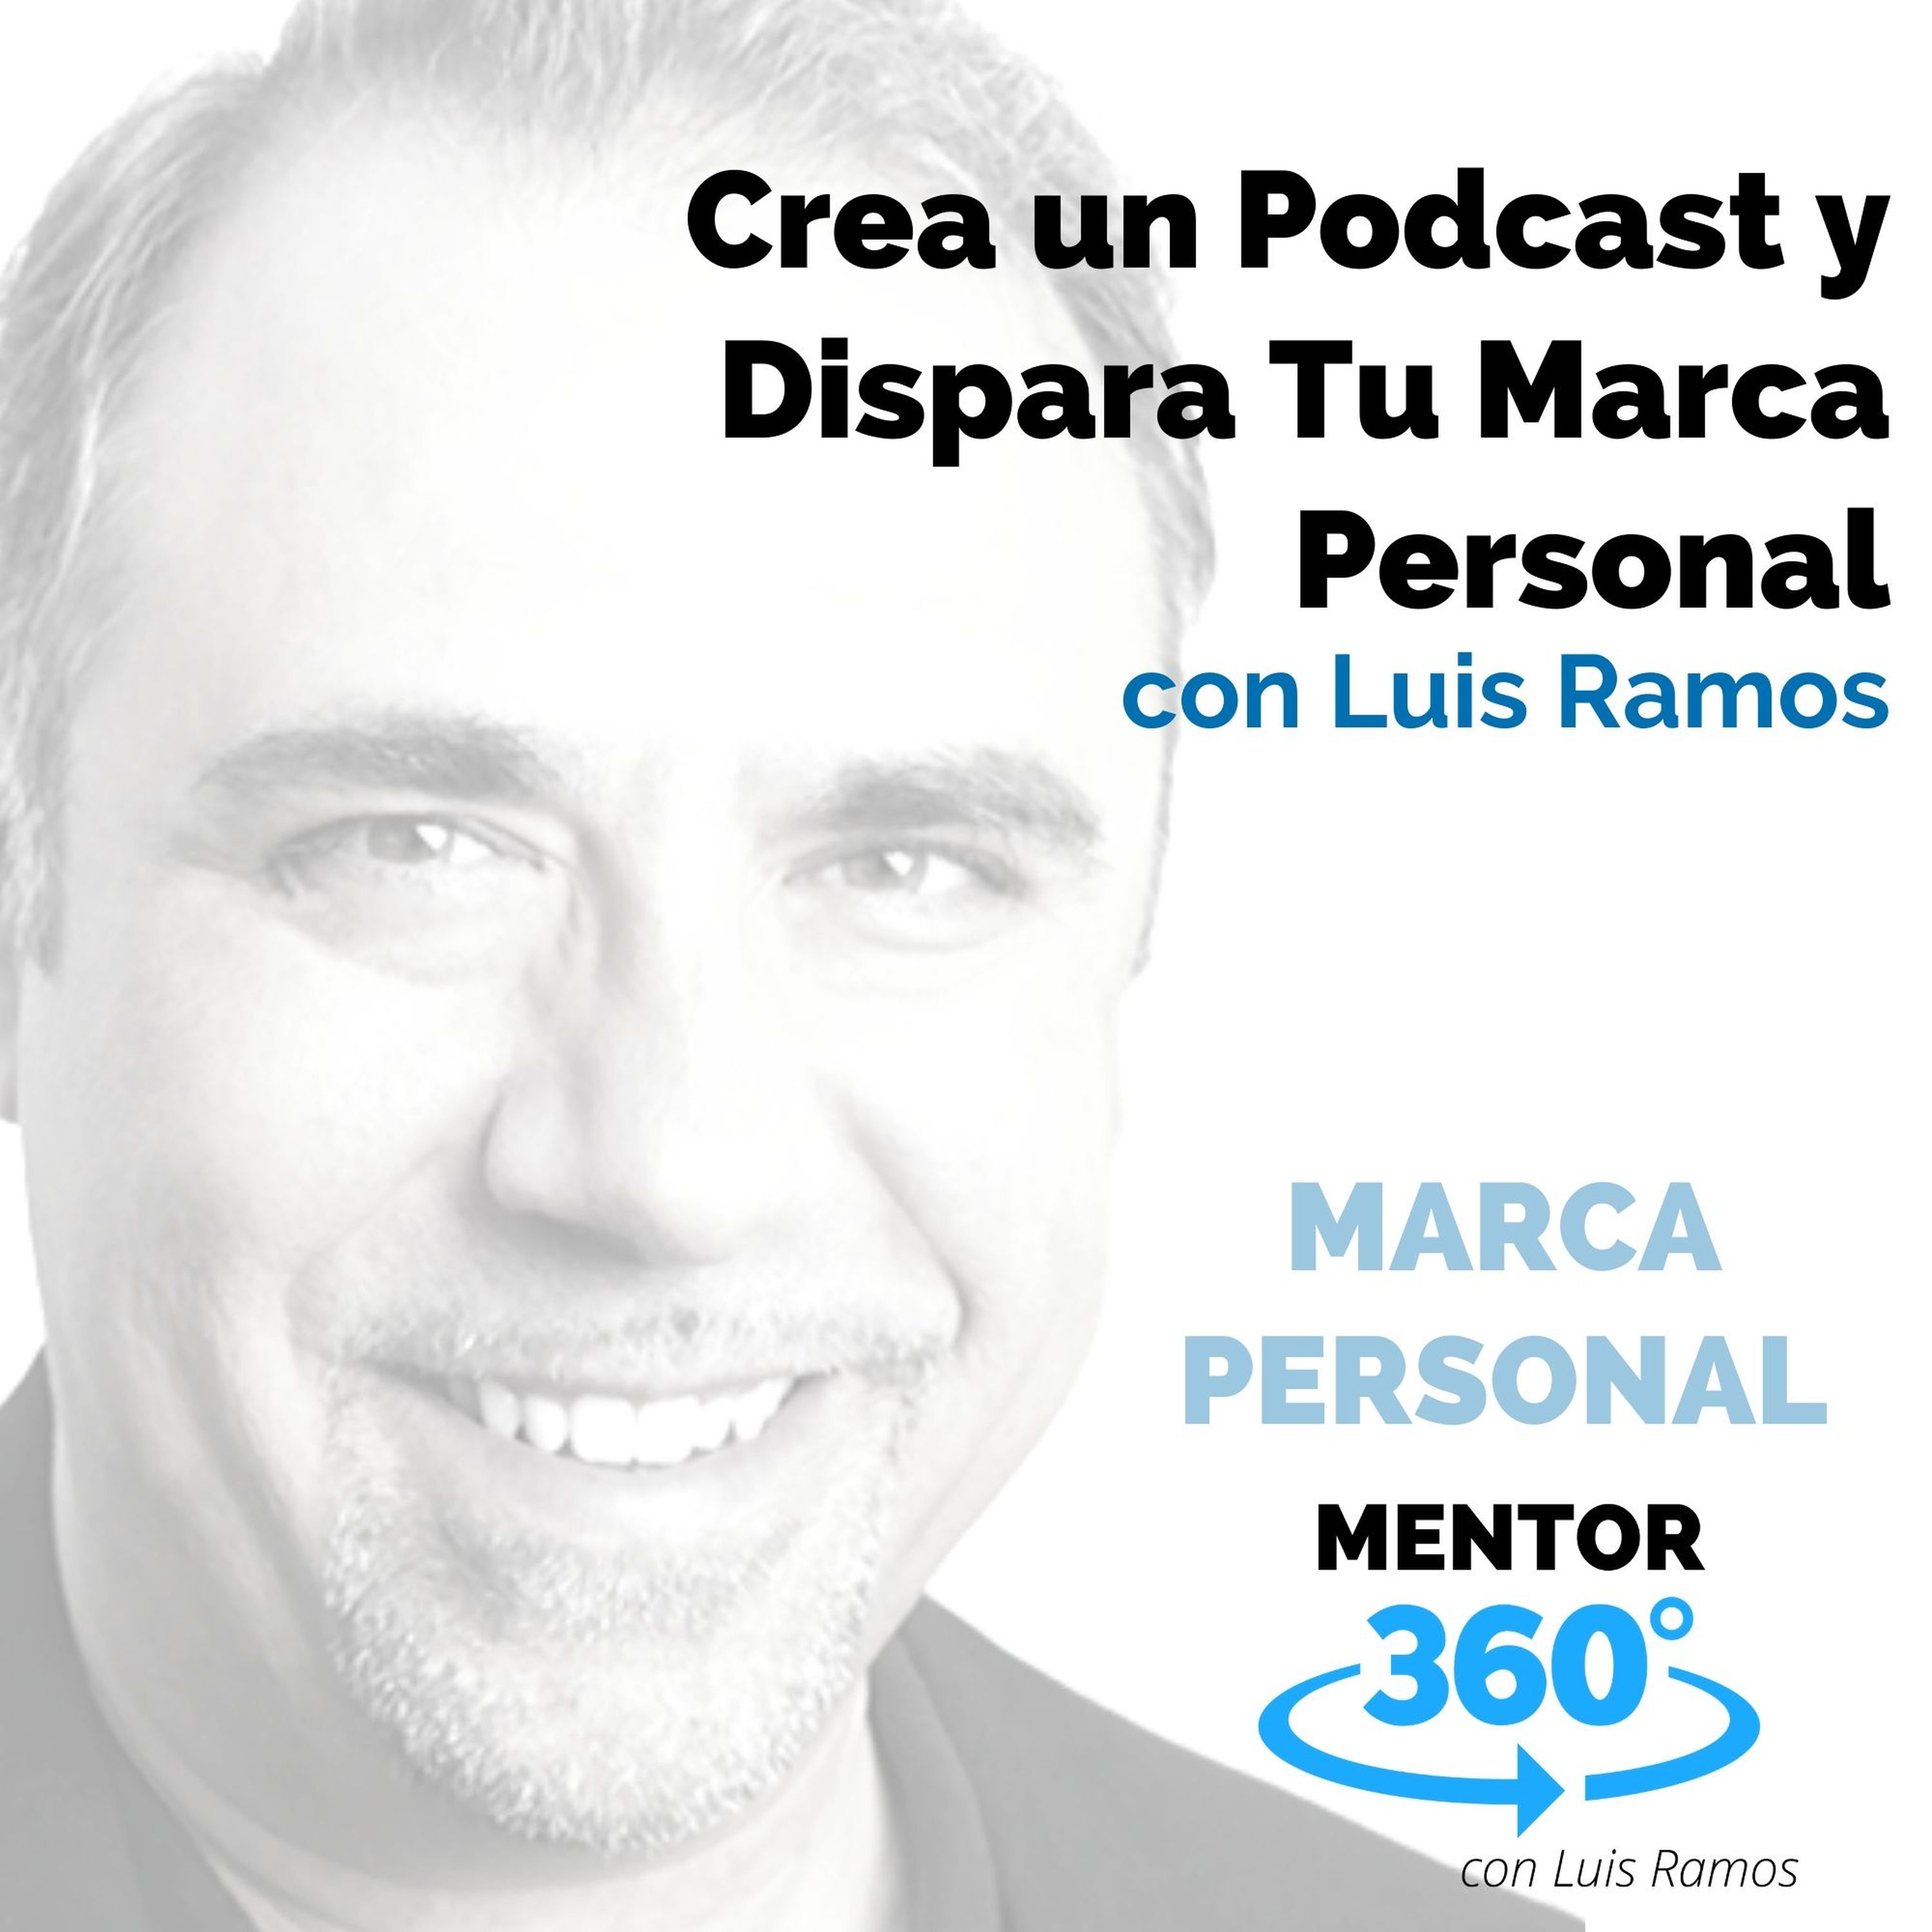 Crea un Podcast y Dispara Tu Marca Personal, con Luis Ramos - MARCA PERSONAL